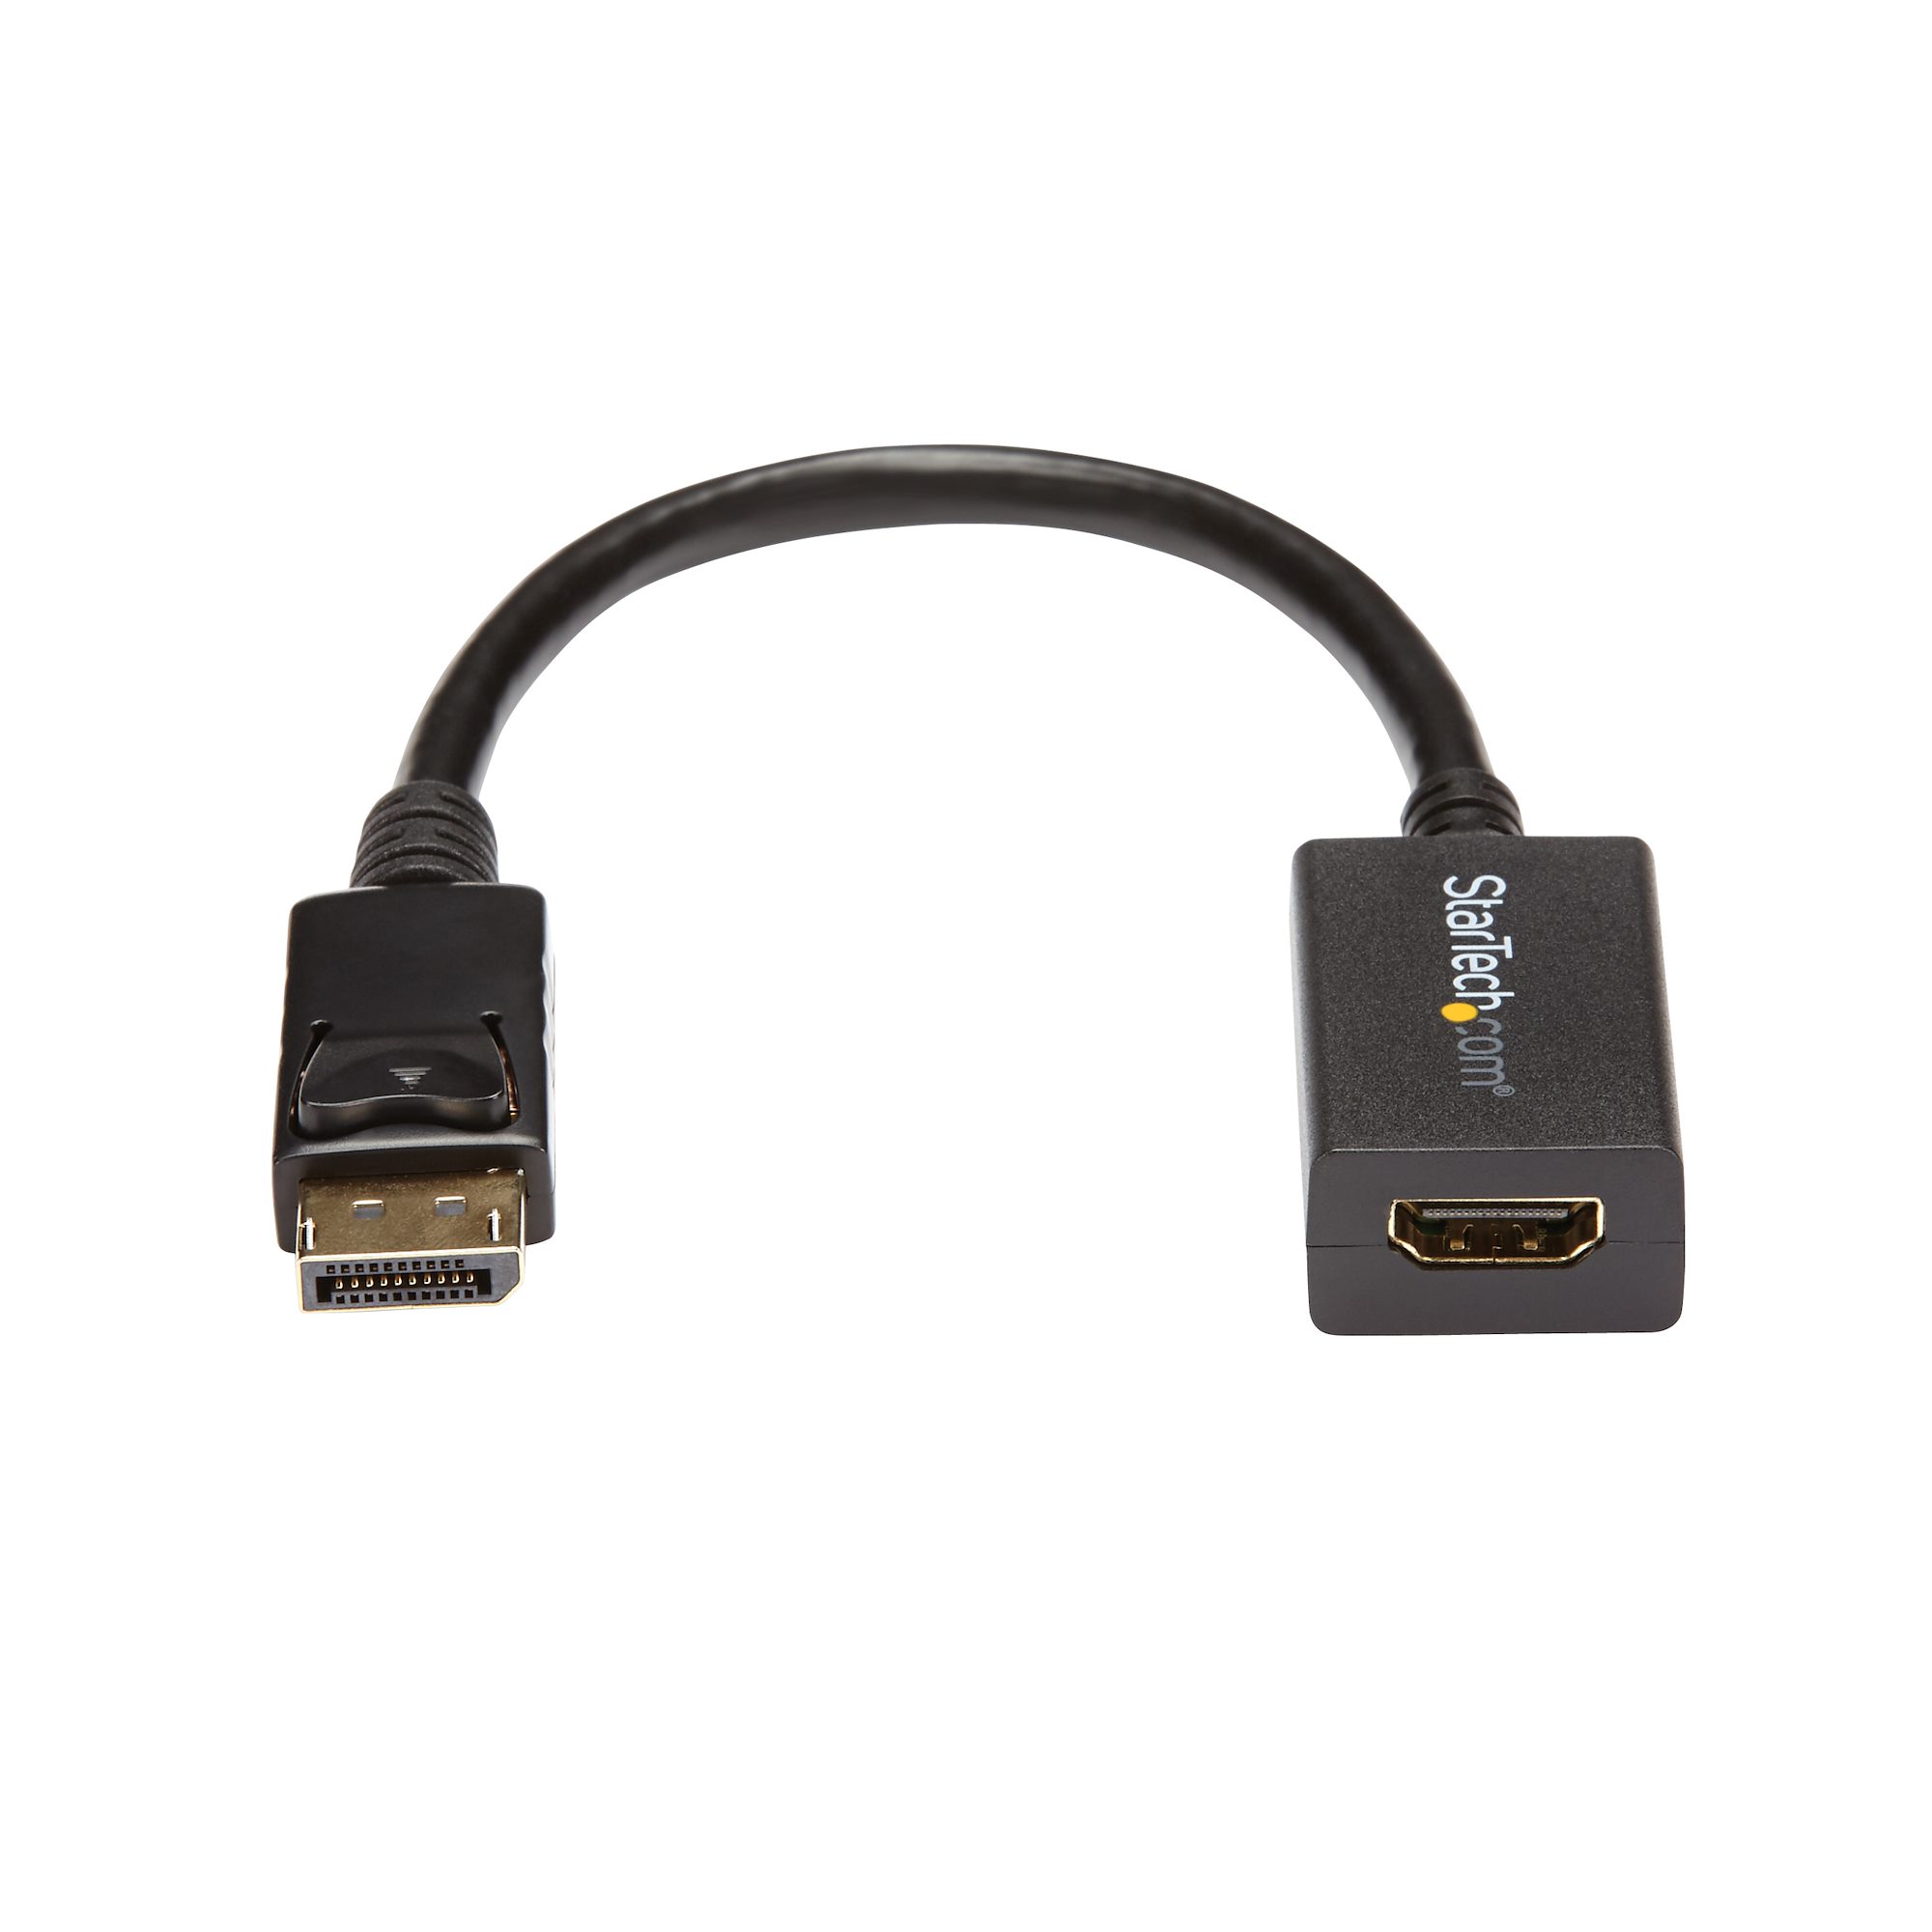 CABLE ADAPTADOR DISPLAY PORT A HDMI – DigitalServer